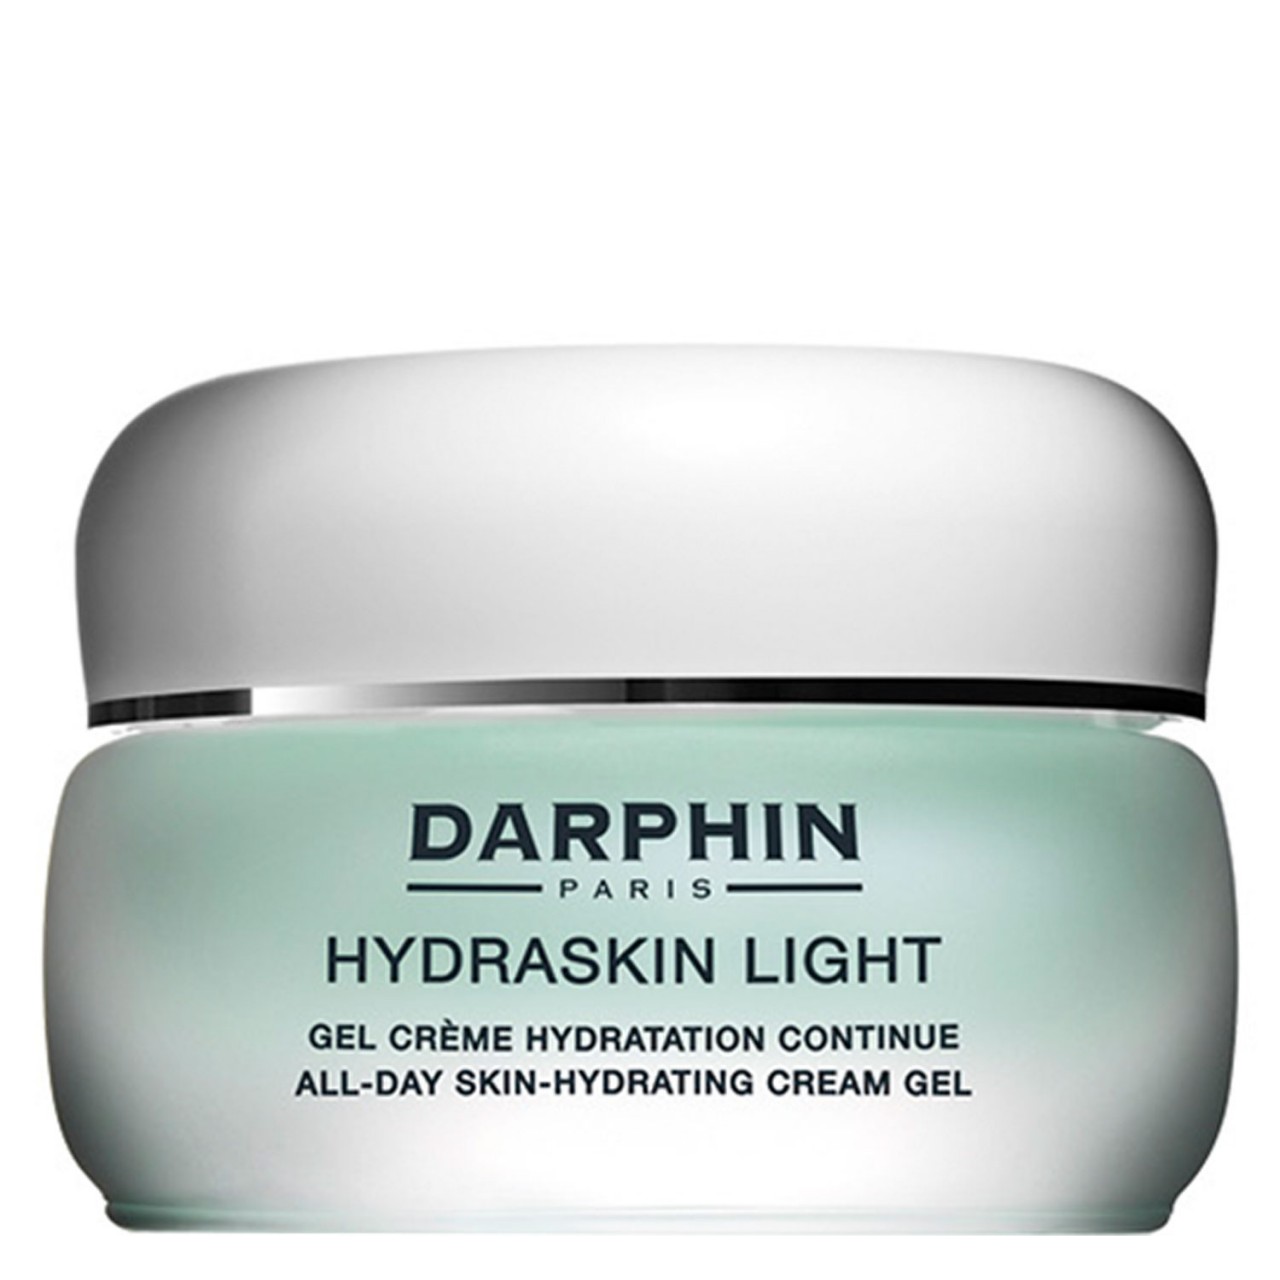 HYDRASKIN - Light All-Day Skin-Hydrating Cream Gel von Darphin